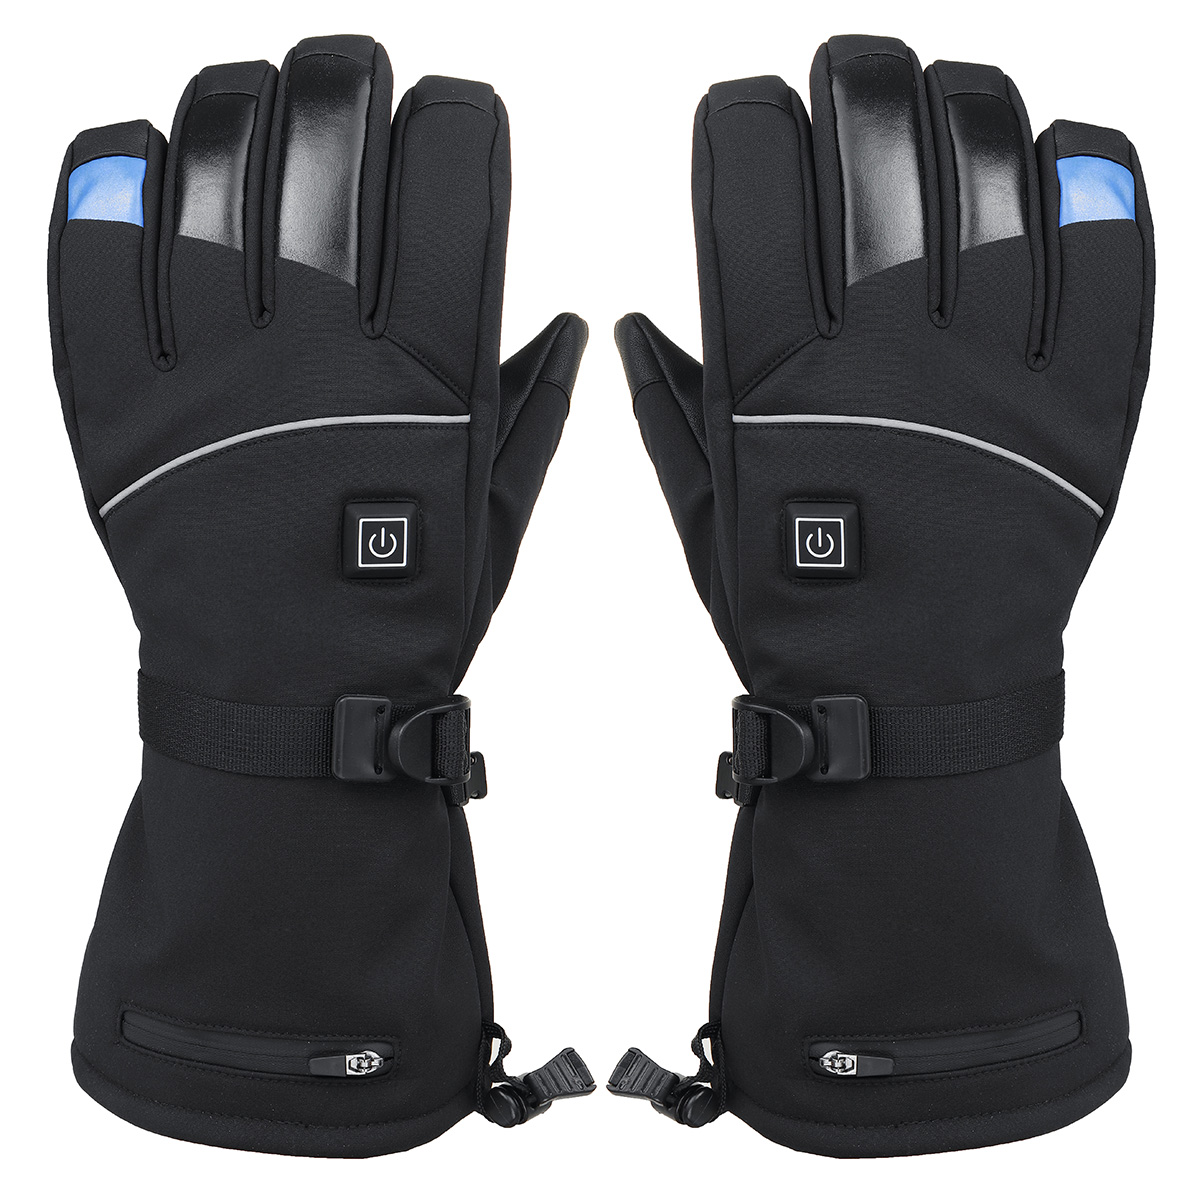 Beheizbare Handschuhe Damen Herren Wiederaufladbare wasserdichte 2021 neueste 3 Heiztemperatur einstellbare Touchscreen Beheizte Handschuhe für Outdoor-Aktivitäten 